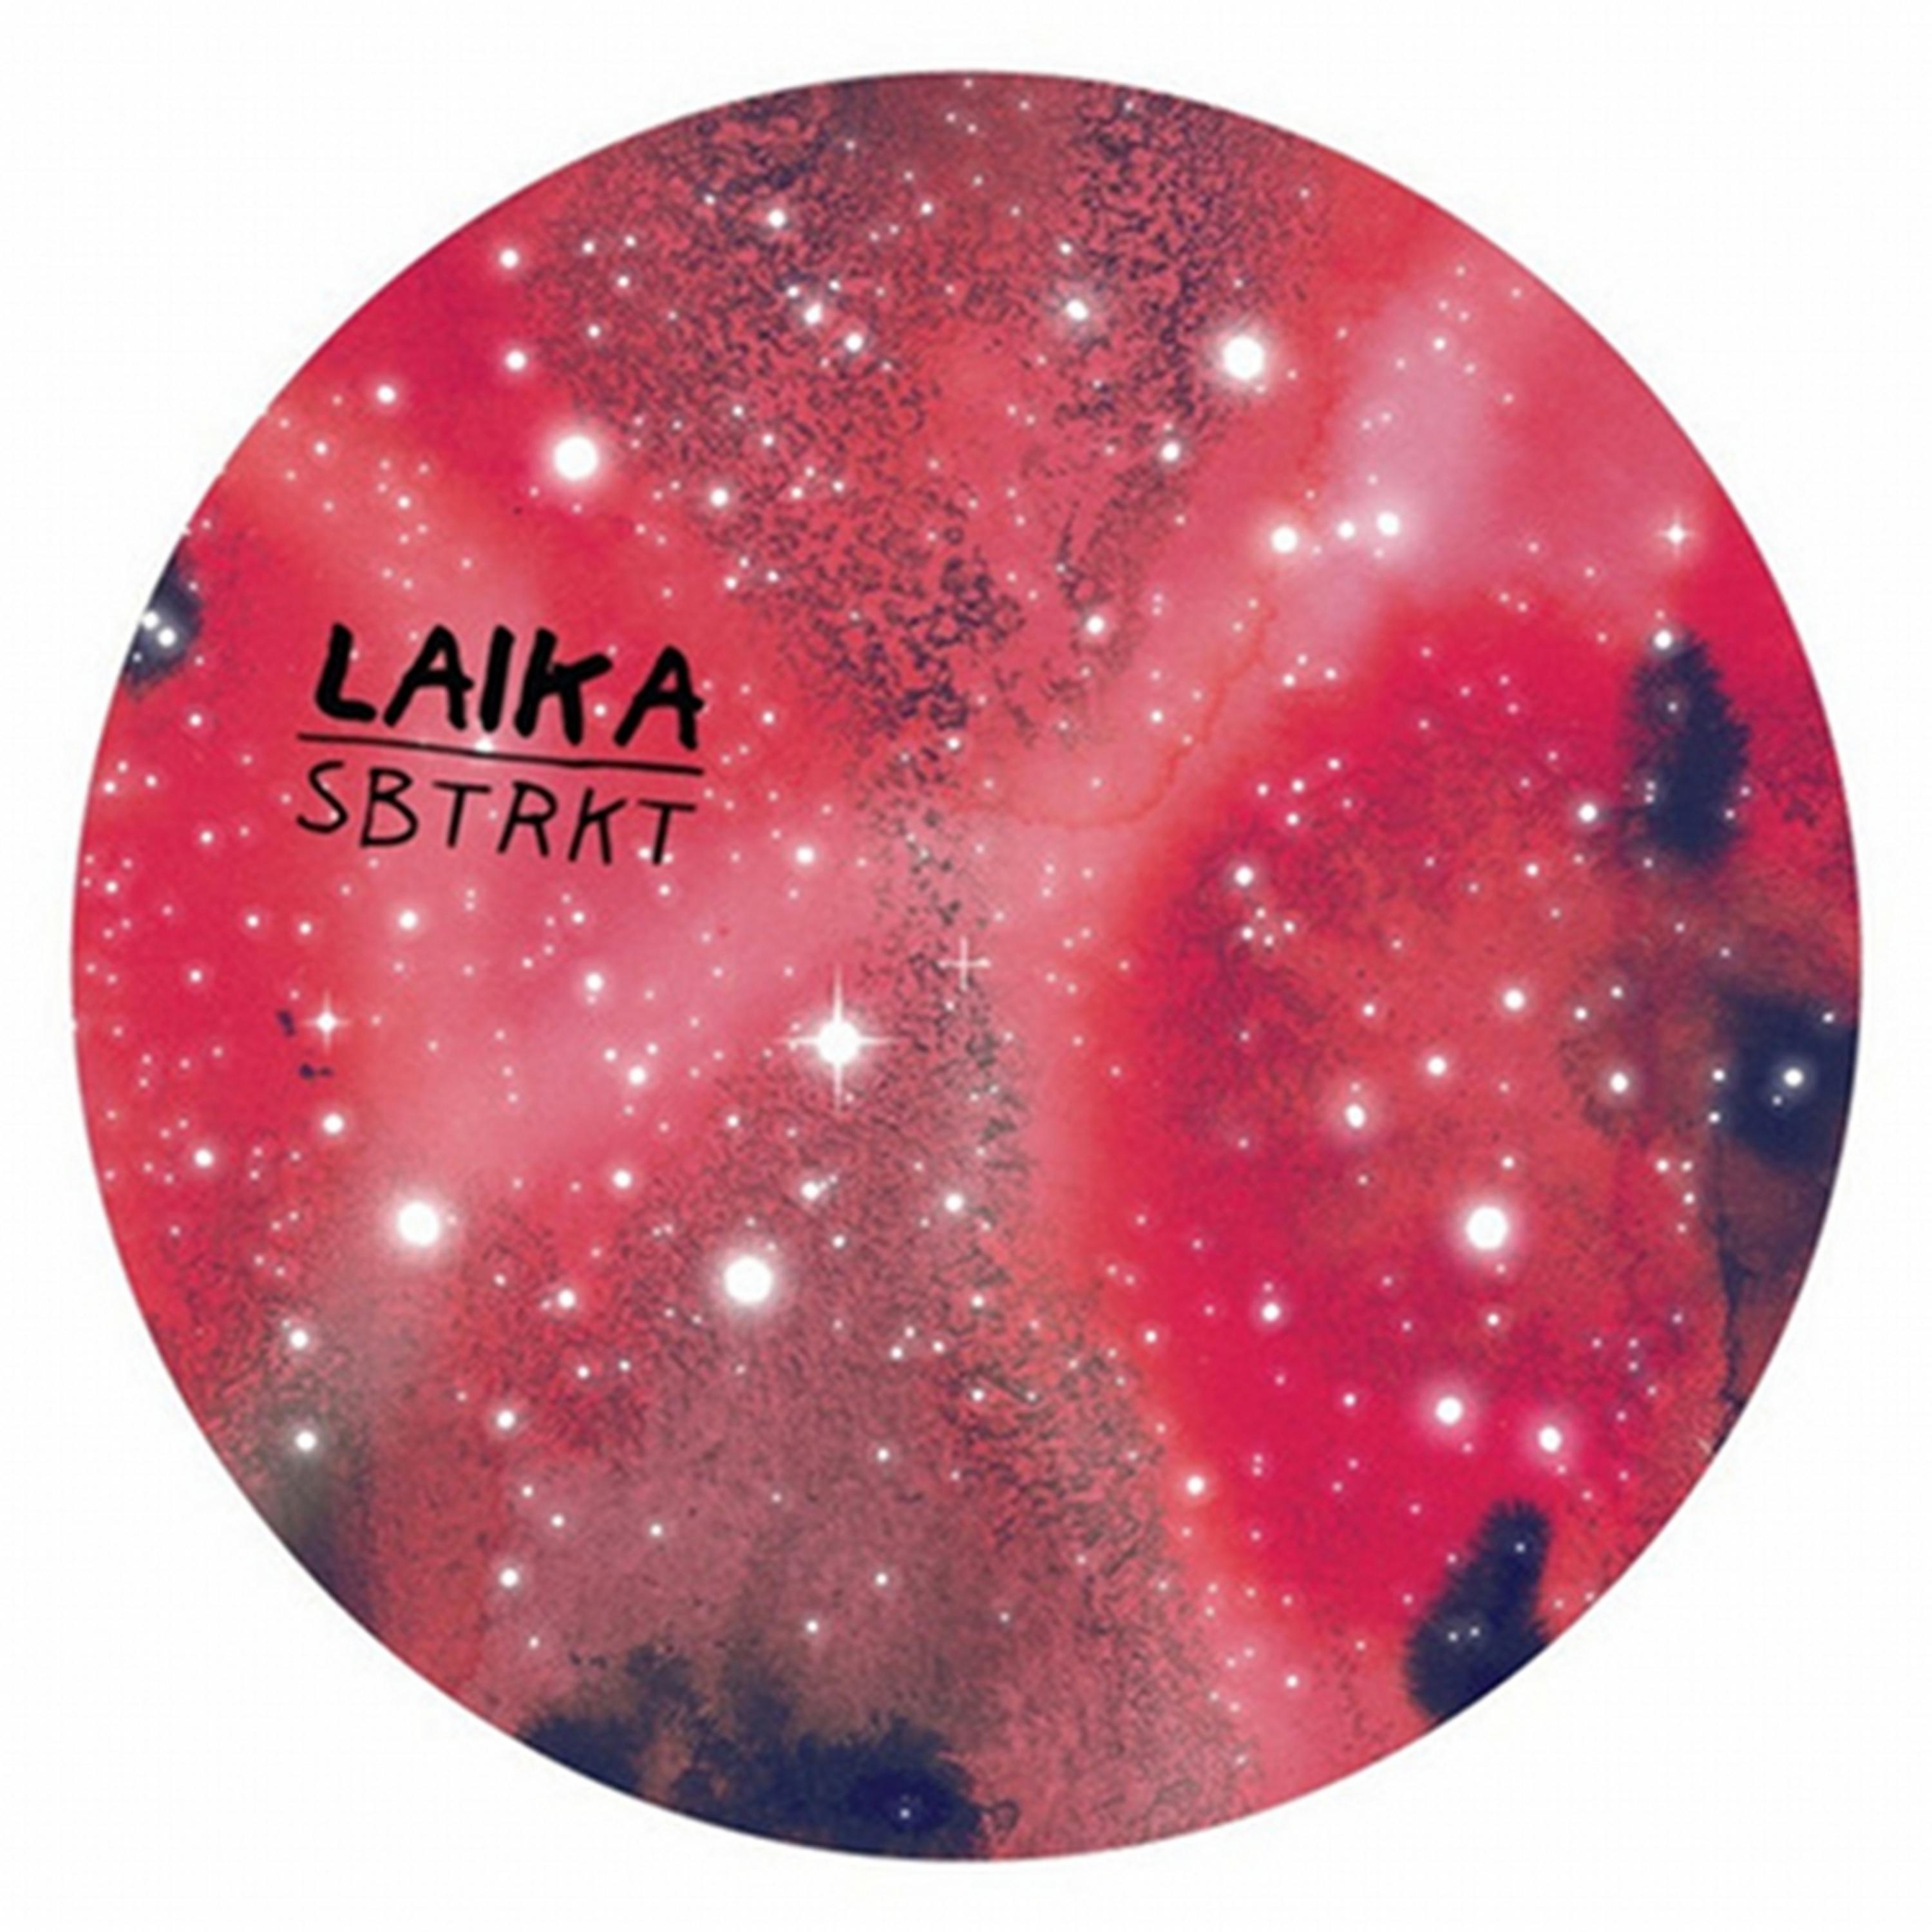 Английские песни из лайка. Laika Band. Laika "laika. Nebula (CD)". Песни из лайка для ЛП. Музыка нас лайка.